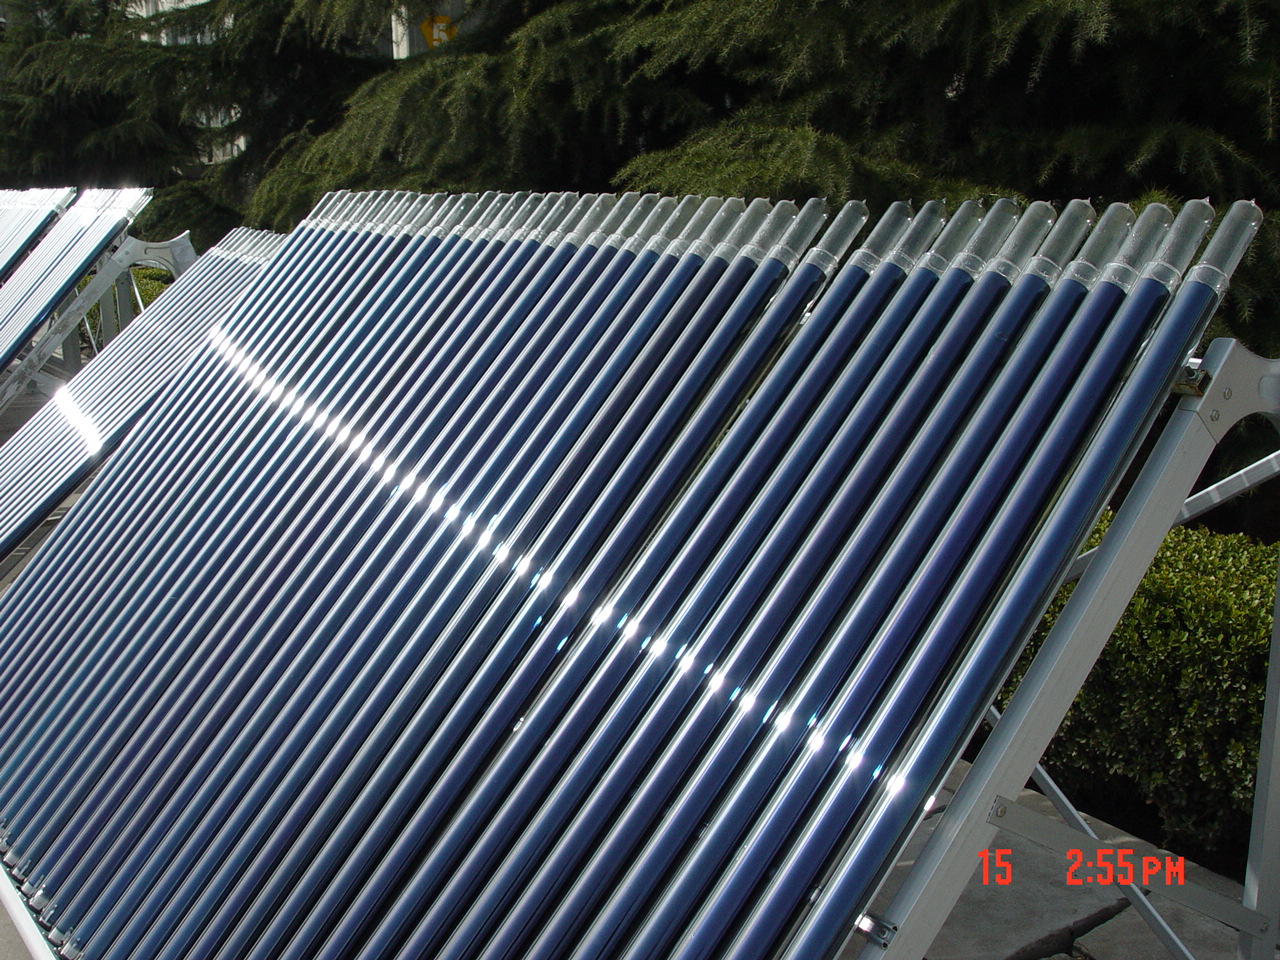 范围拓展安徽省合肥市三高紫金管太阳能真空管生产厂家产品不断优化